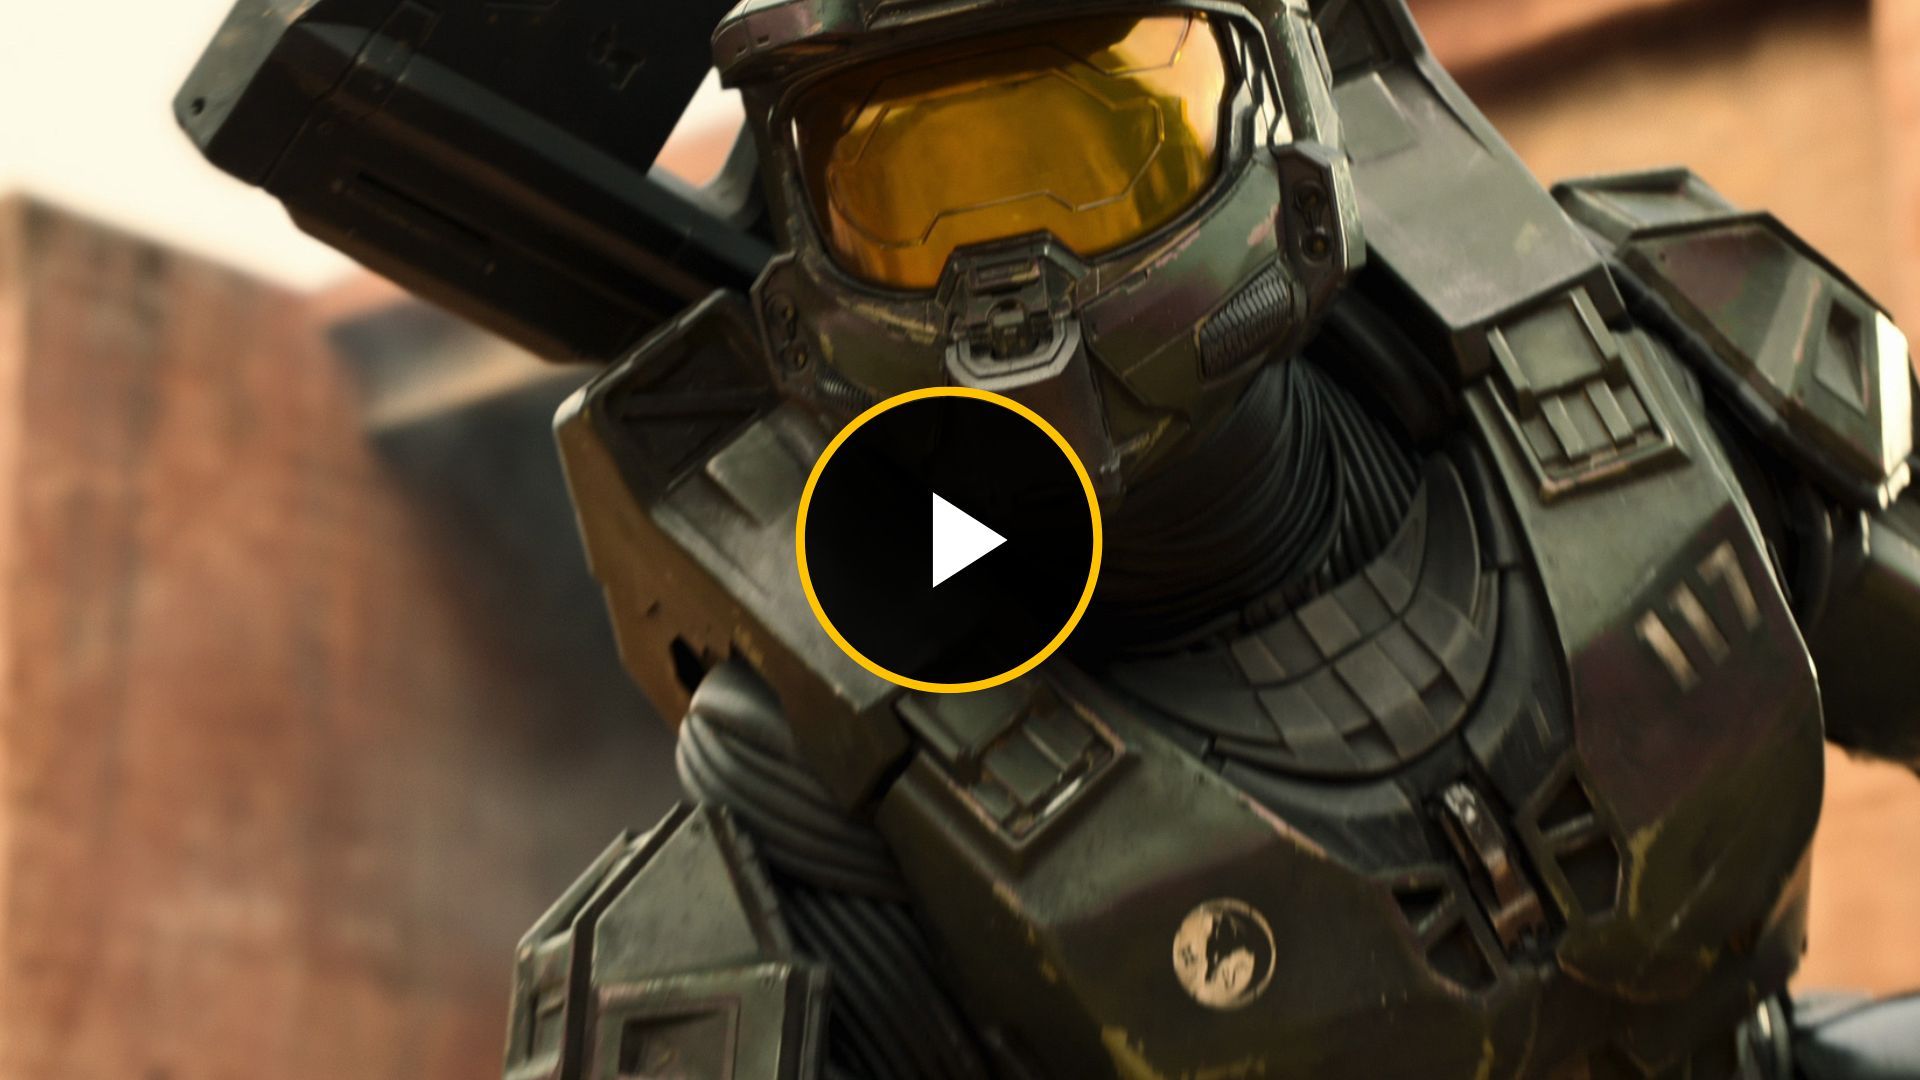 Halo - série de TV com produção de Spielberg finalmente será lançada -  Maxiverso